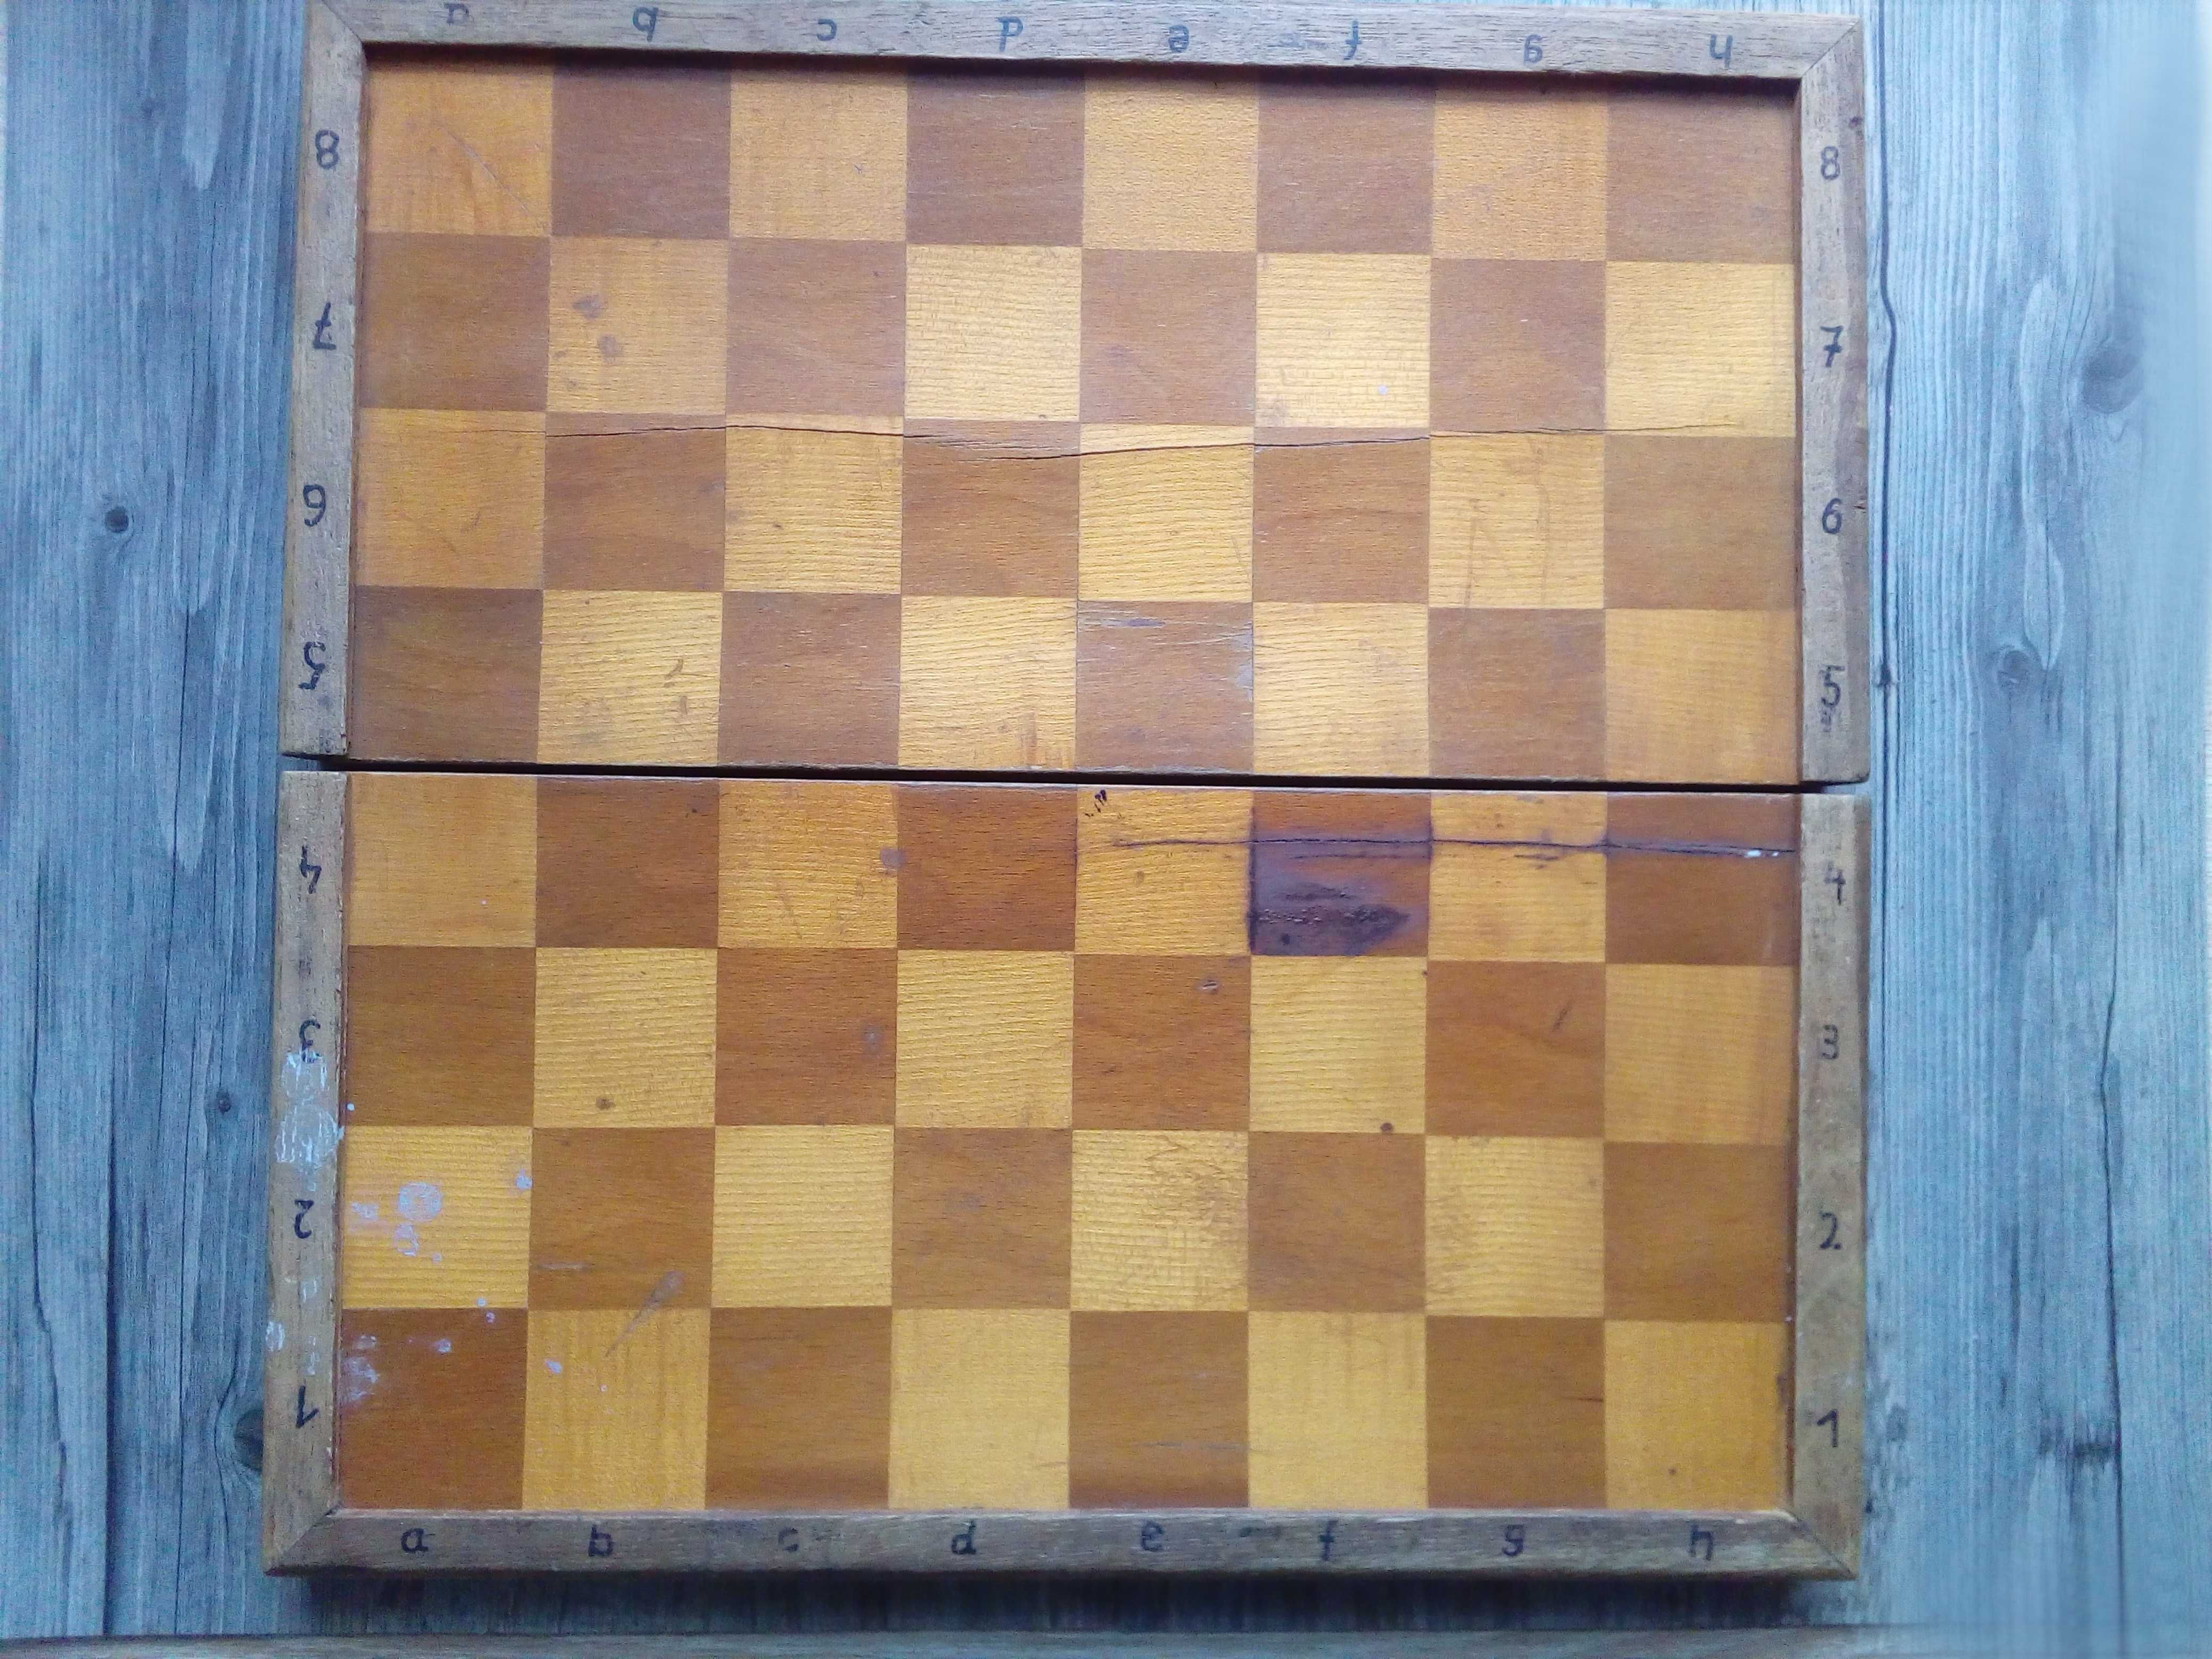 szachy szachownica drewniana 159zł zamiast 199zł